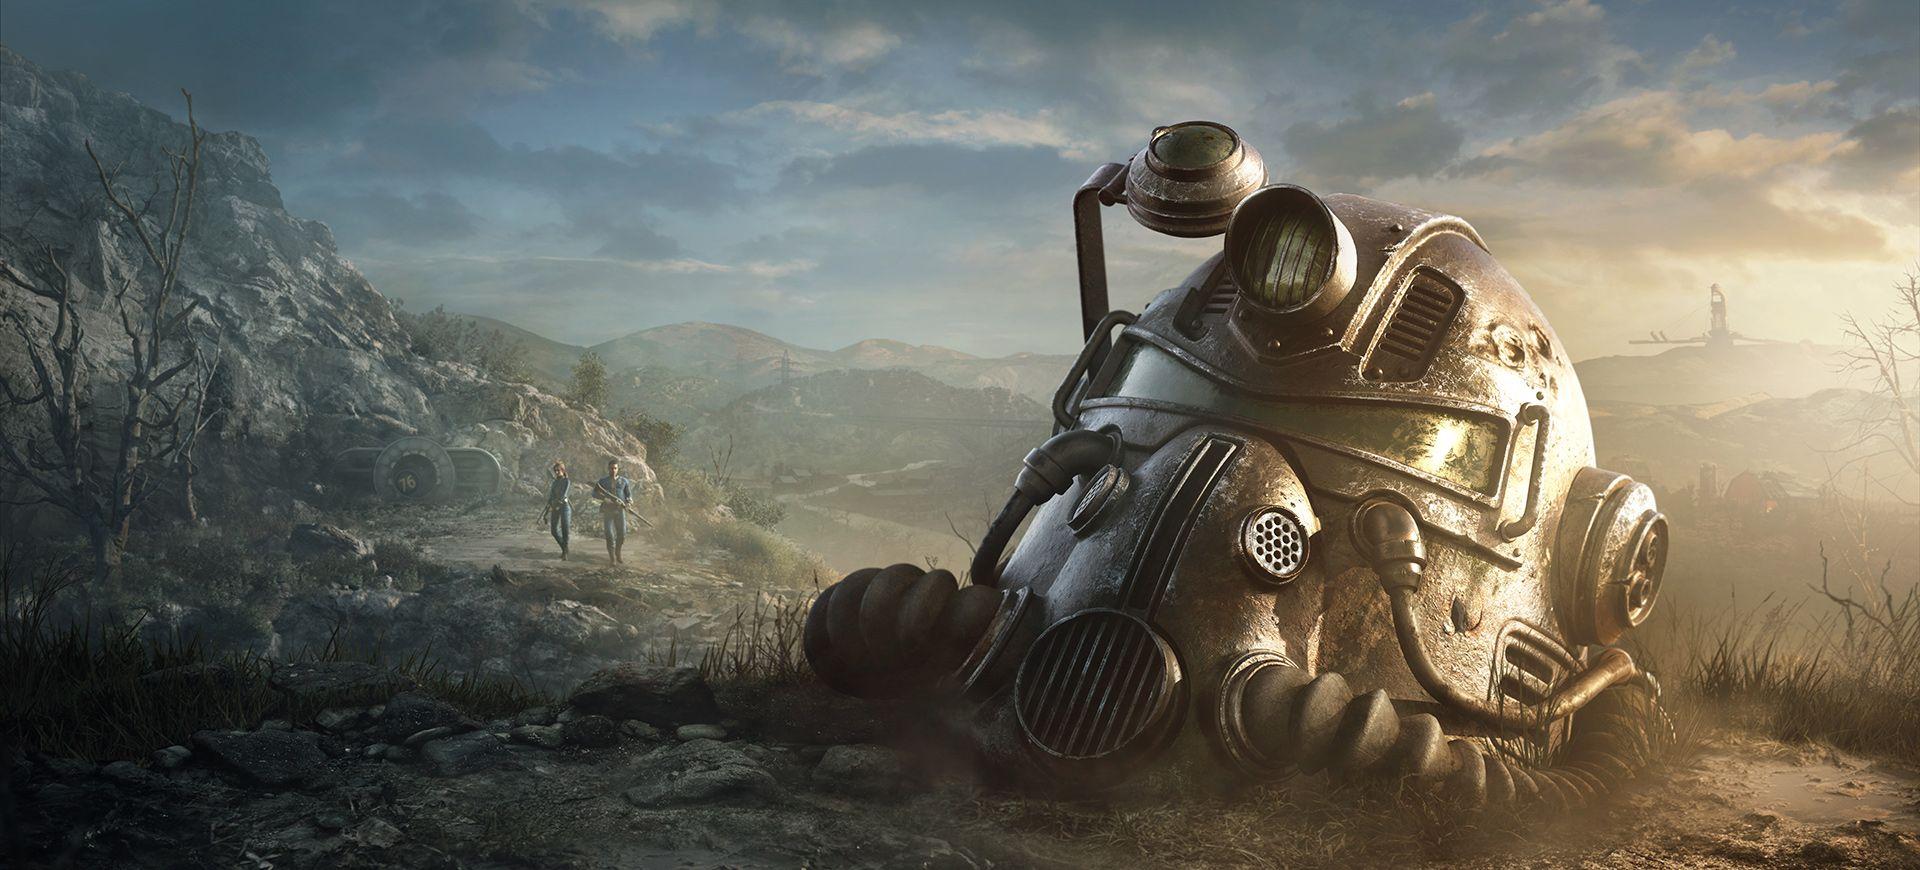 Является ли Fallout 76 кроссплатформенной игрой и поддерживает ли кроссплей?